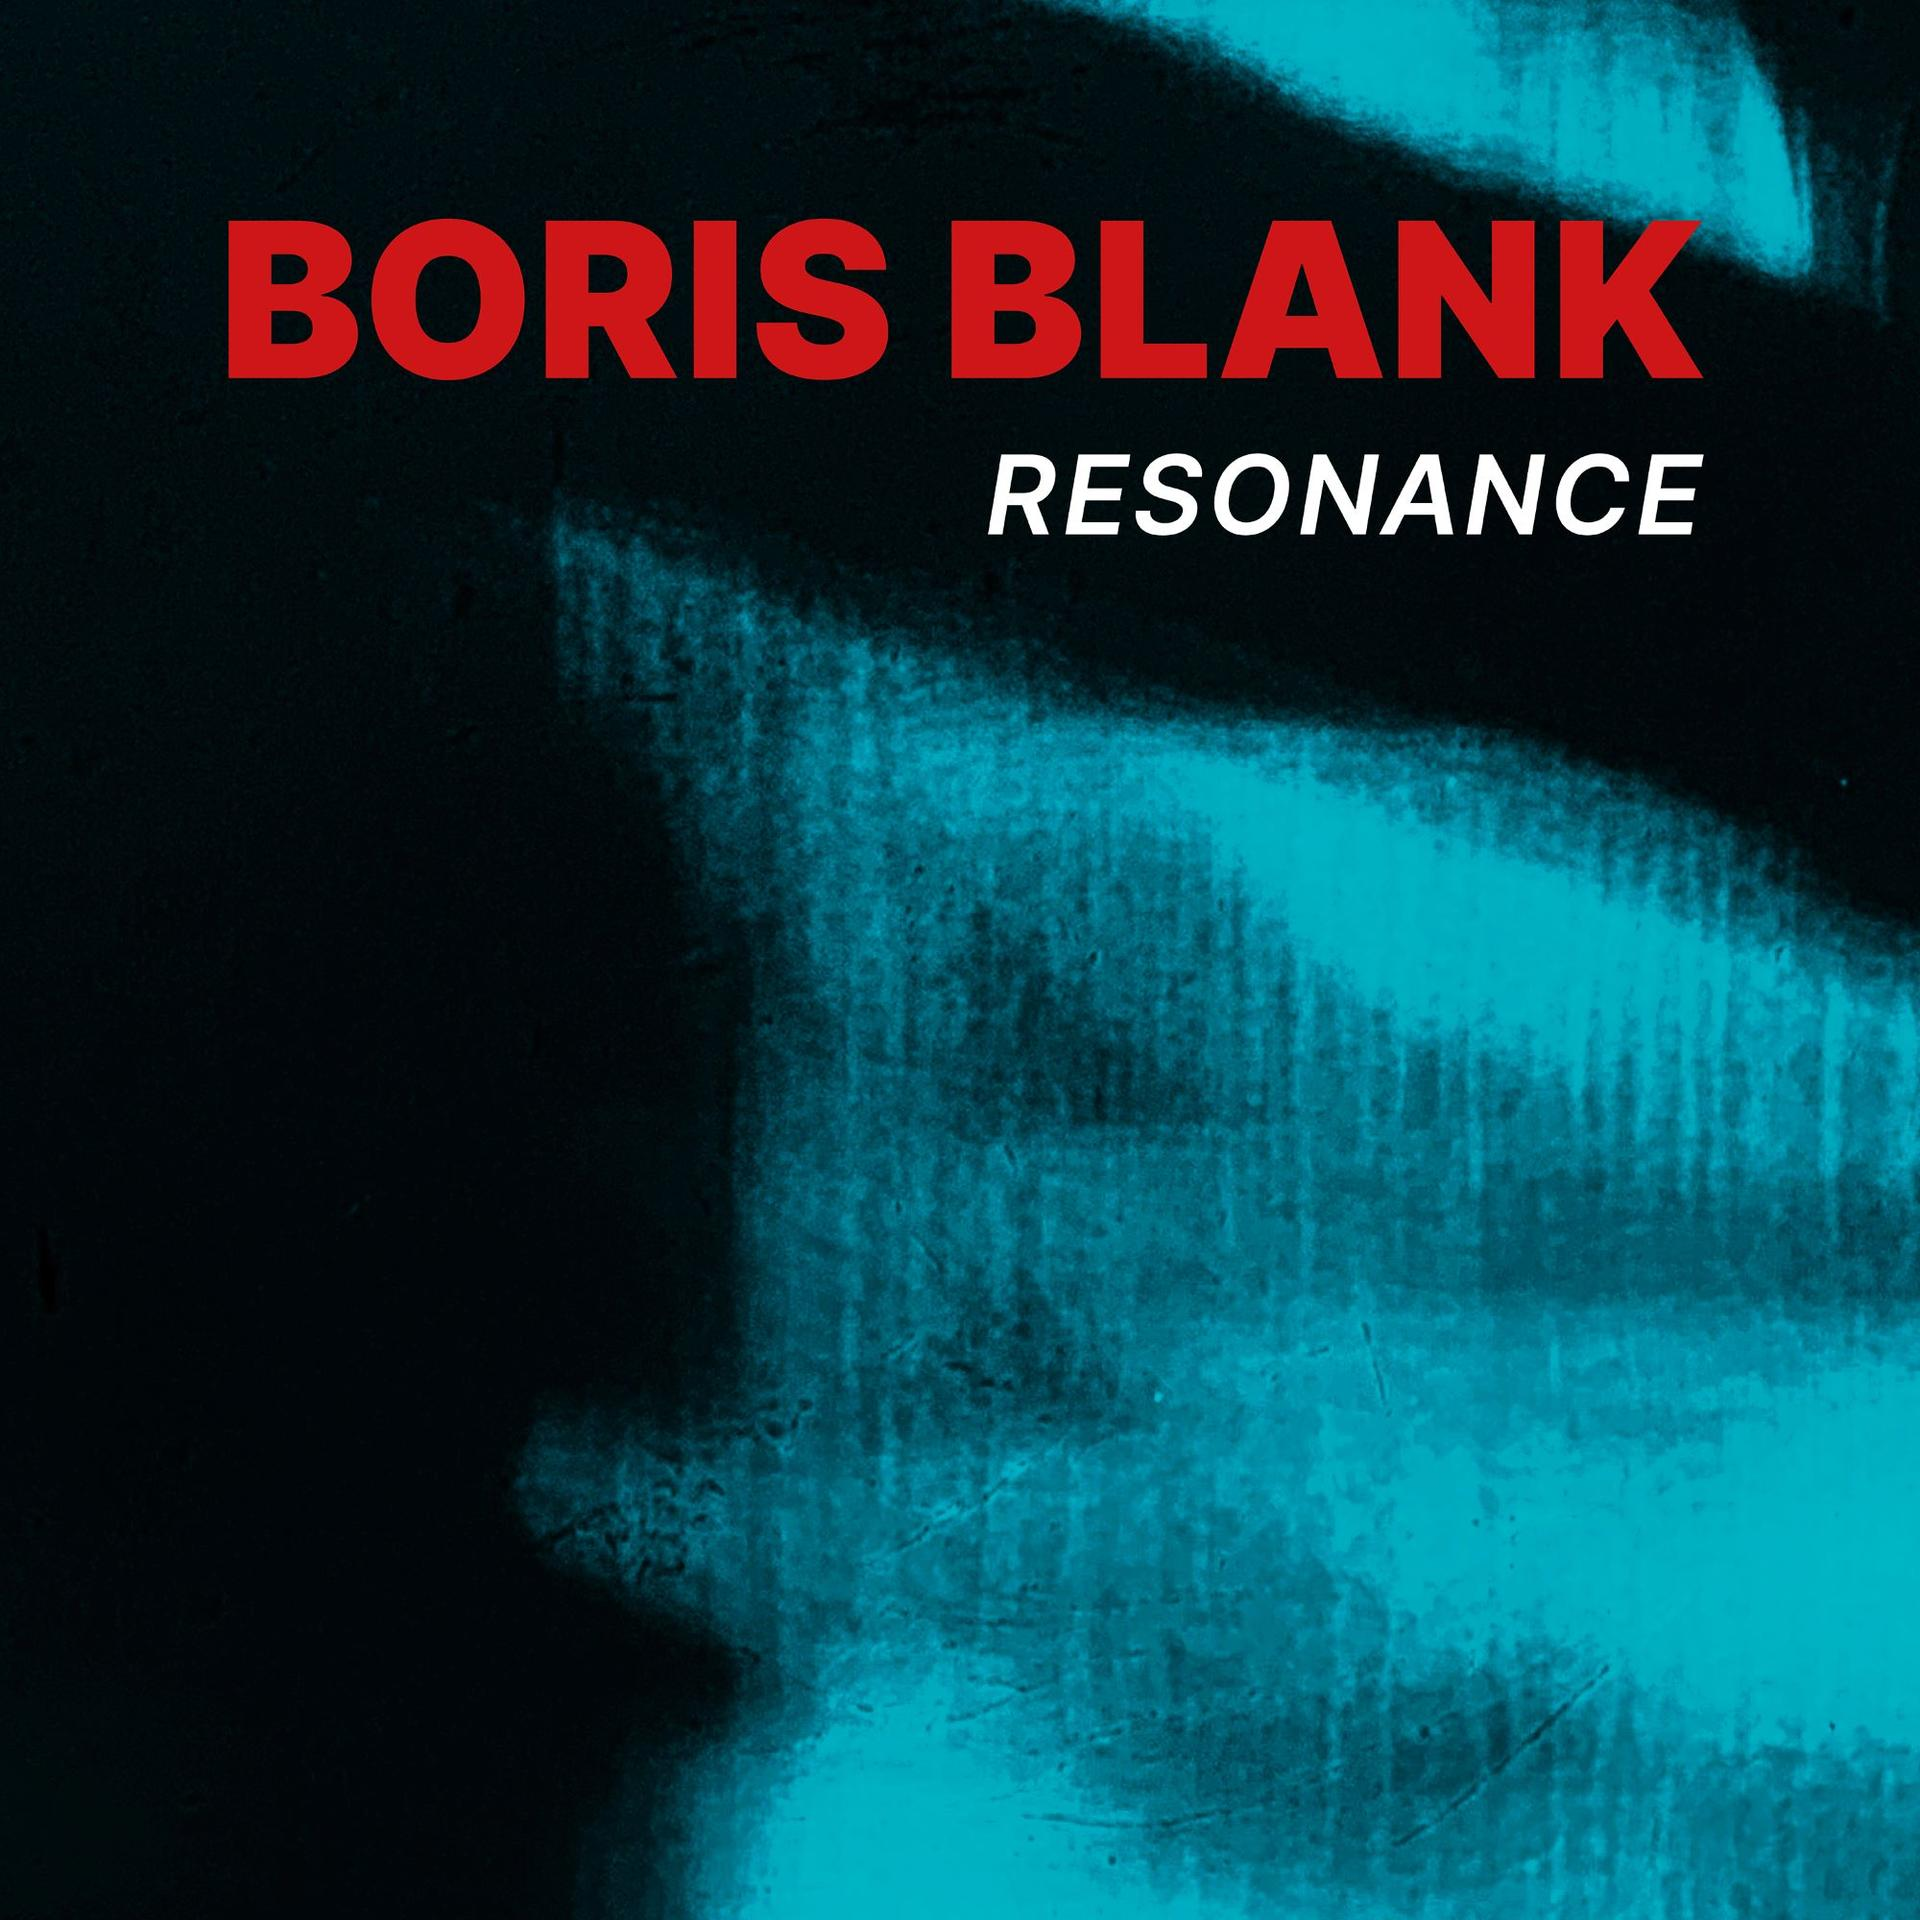 Audio) - (CD+BR) Resonance Blu-ray Blank - (CD Boris +